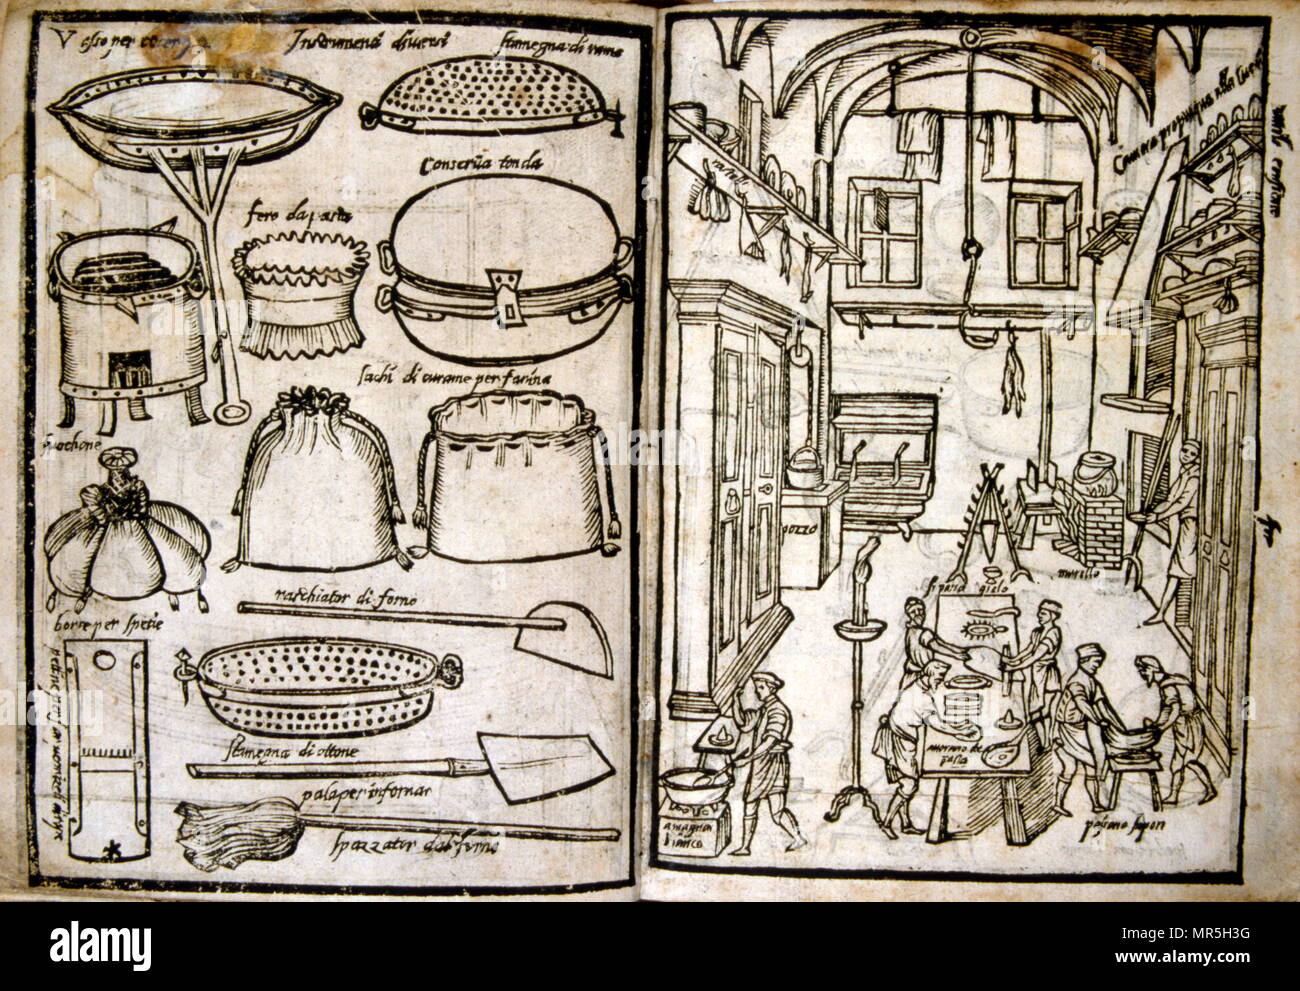 Holzschnitt Abbildungen einer Renaissance Küche und Ausrüstung. Von "Opera dell'arte del cucinare' von Bartolomeo Scappi (C. 1500 - 1577), einem wichtigen italienischen Renaissance Koch. Ruhm erwarb er im Jahr 1570 bei seinem monumentalen Kochbuch Opera dell'arte del cucinare, wurde veröffentlicht. In dem Buch, das er listet ca. 1000 Rezepte der Renaissance Küche und Kochen beschreibt Techniken und Werkzeuge Stockfoto